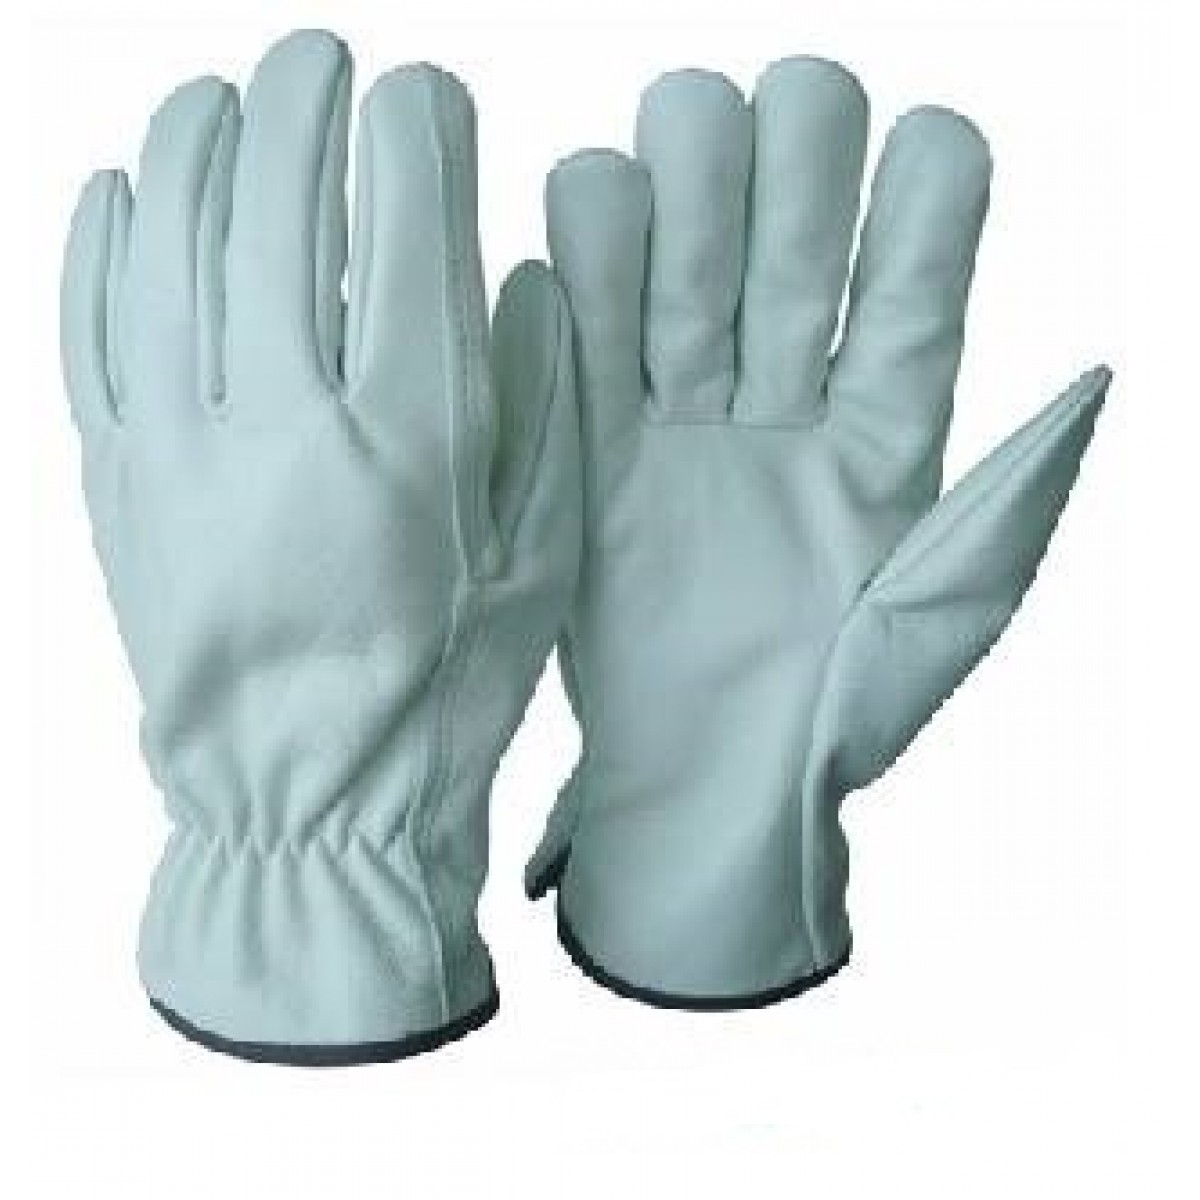 Bạn đang tìm mua găng tay bảo hộ lao động ở TPHCM ?